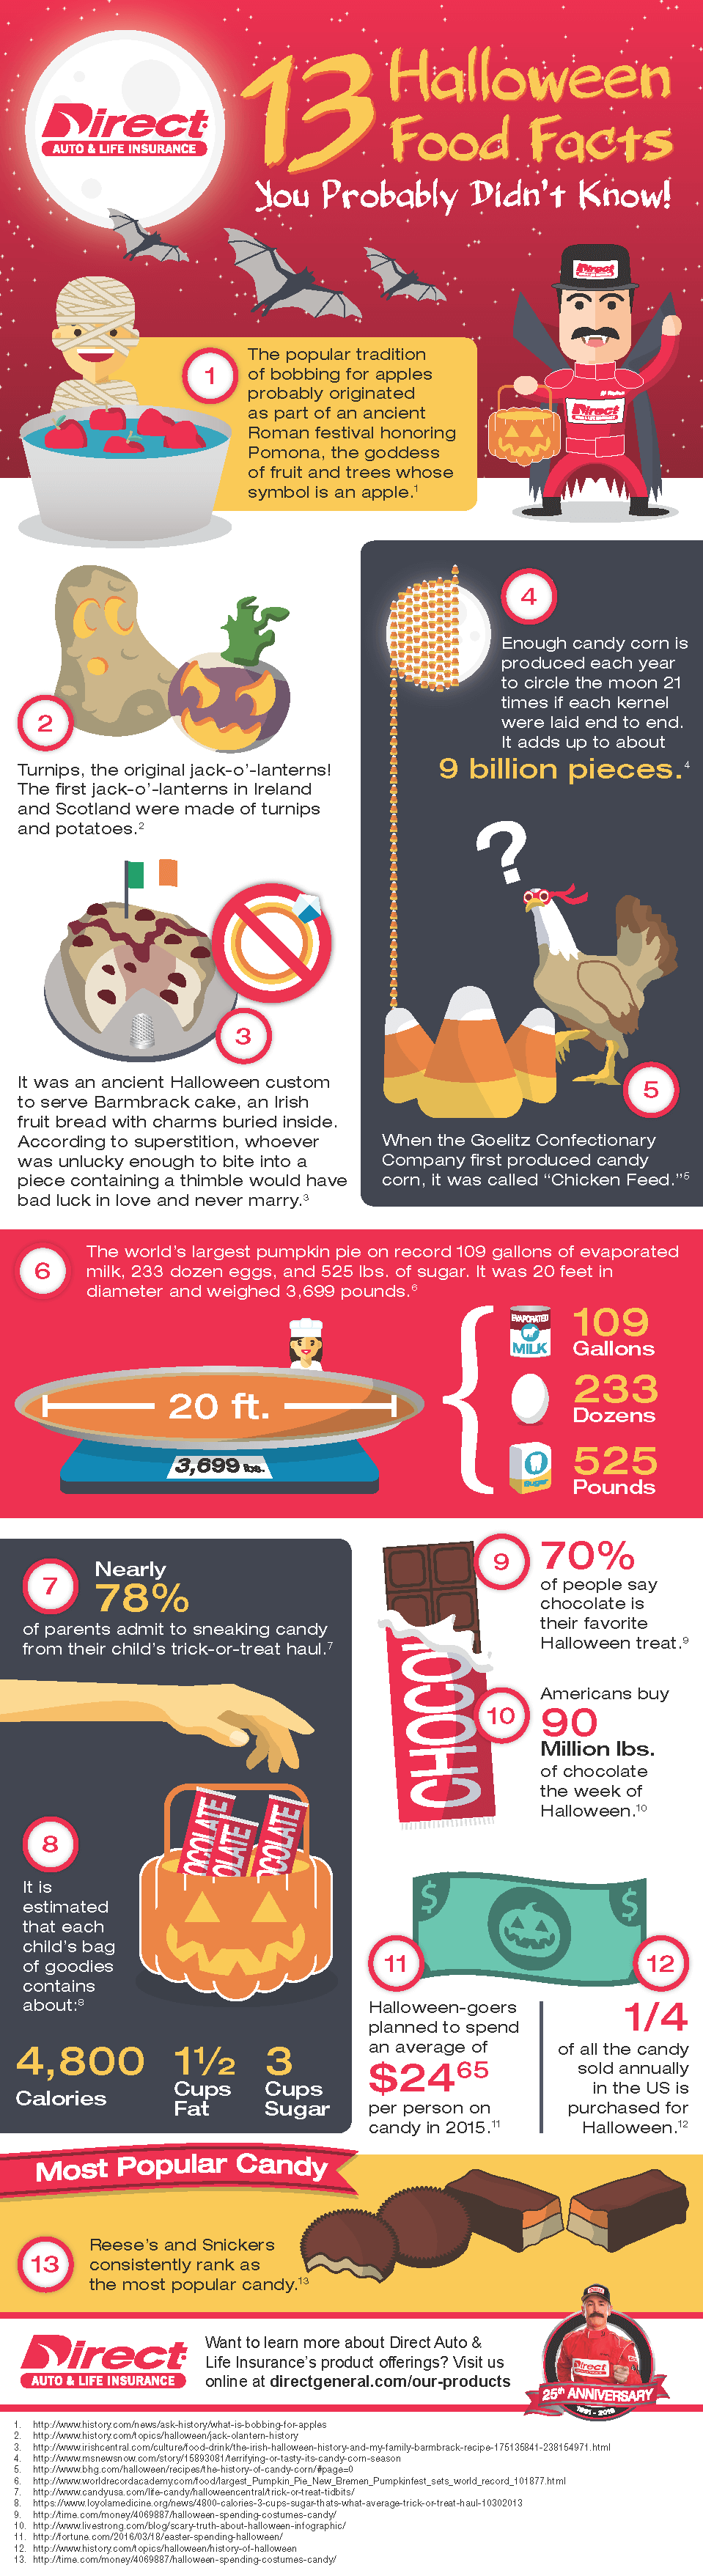 13 Halloween Food Facts